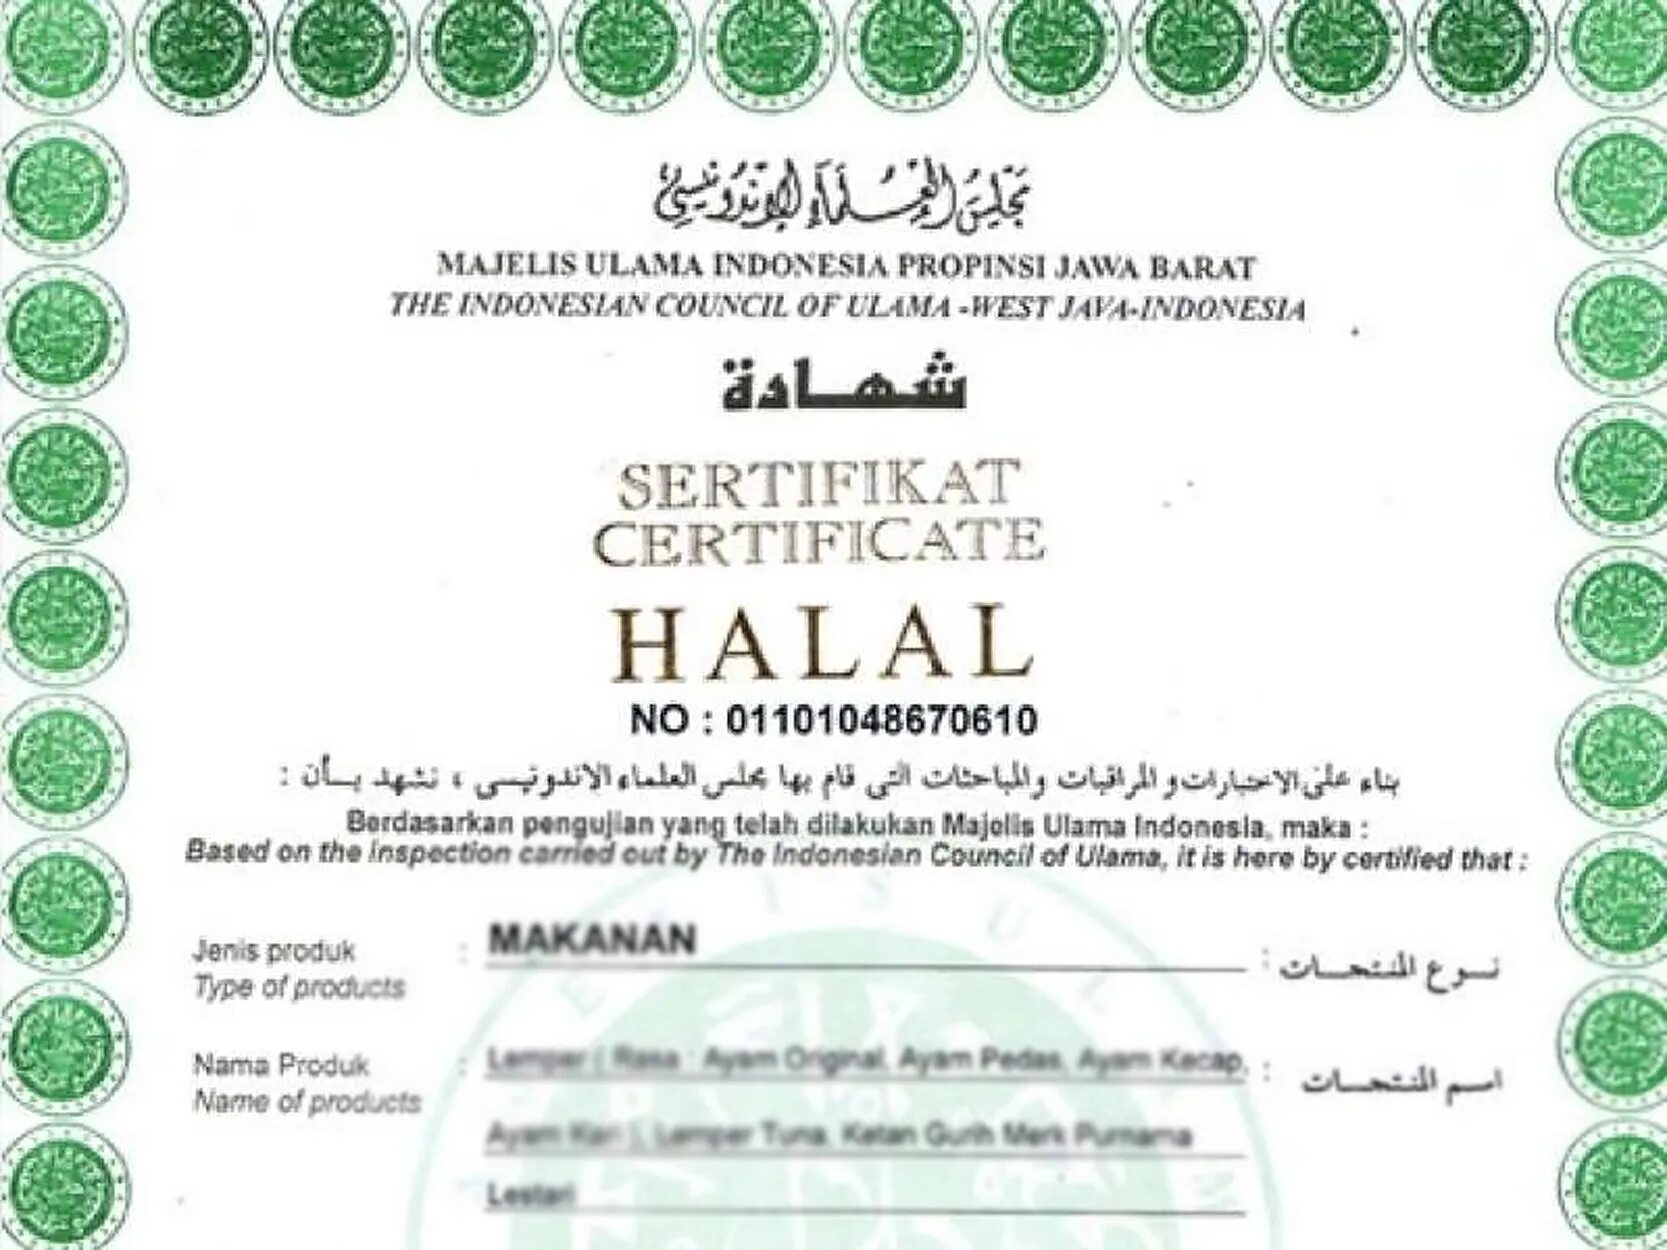 Ламинирование халяль. Разрешение от мечети на сертификат Халяль. Халяль орнамент. Халяль картинки с хорошим качеством. Оригинальный халал сертификат в Кыргызстане.